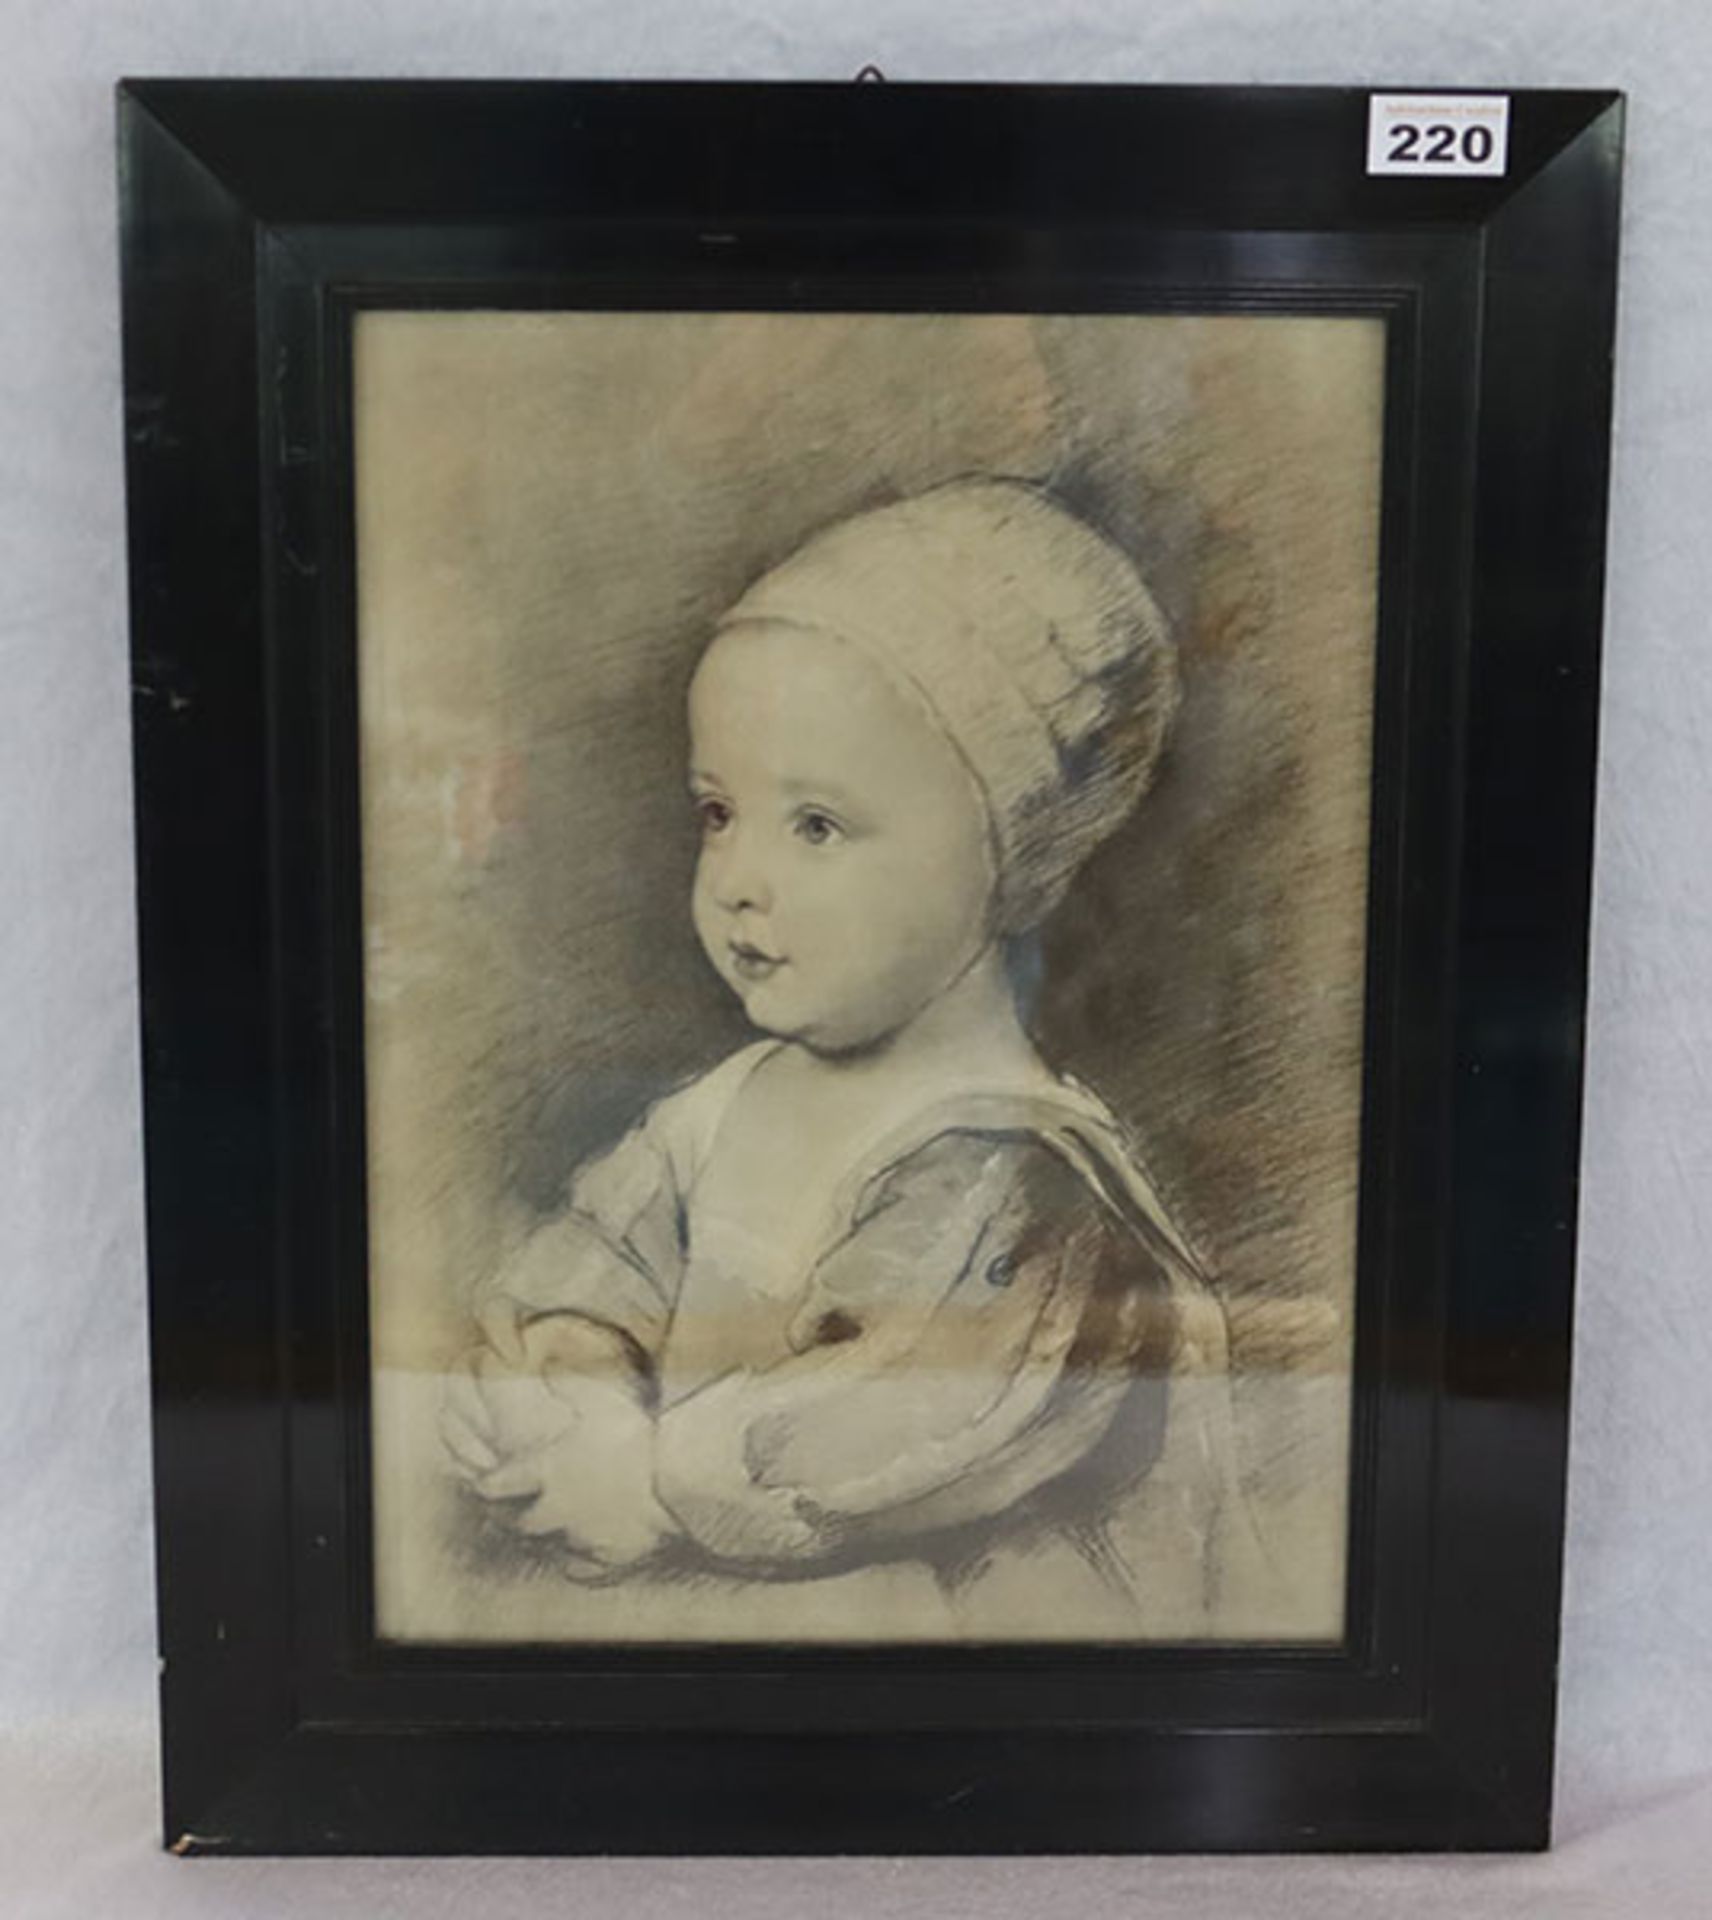 Druck,"Kinderbildnis - Portrait von König Charles I. von England", nach dem flämischen Maler